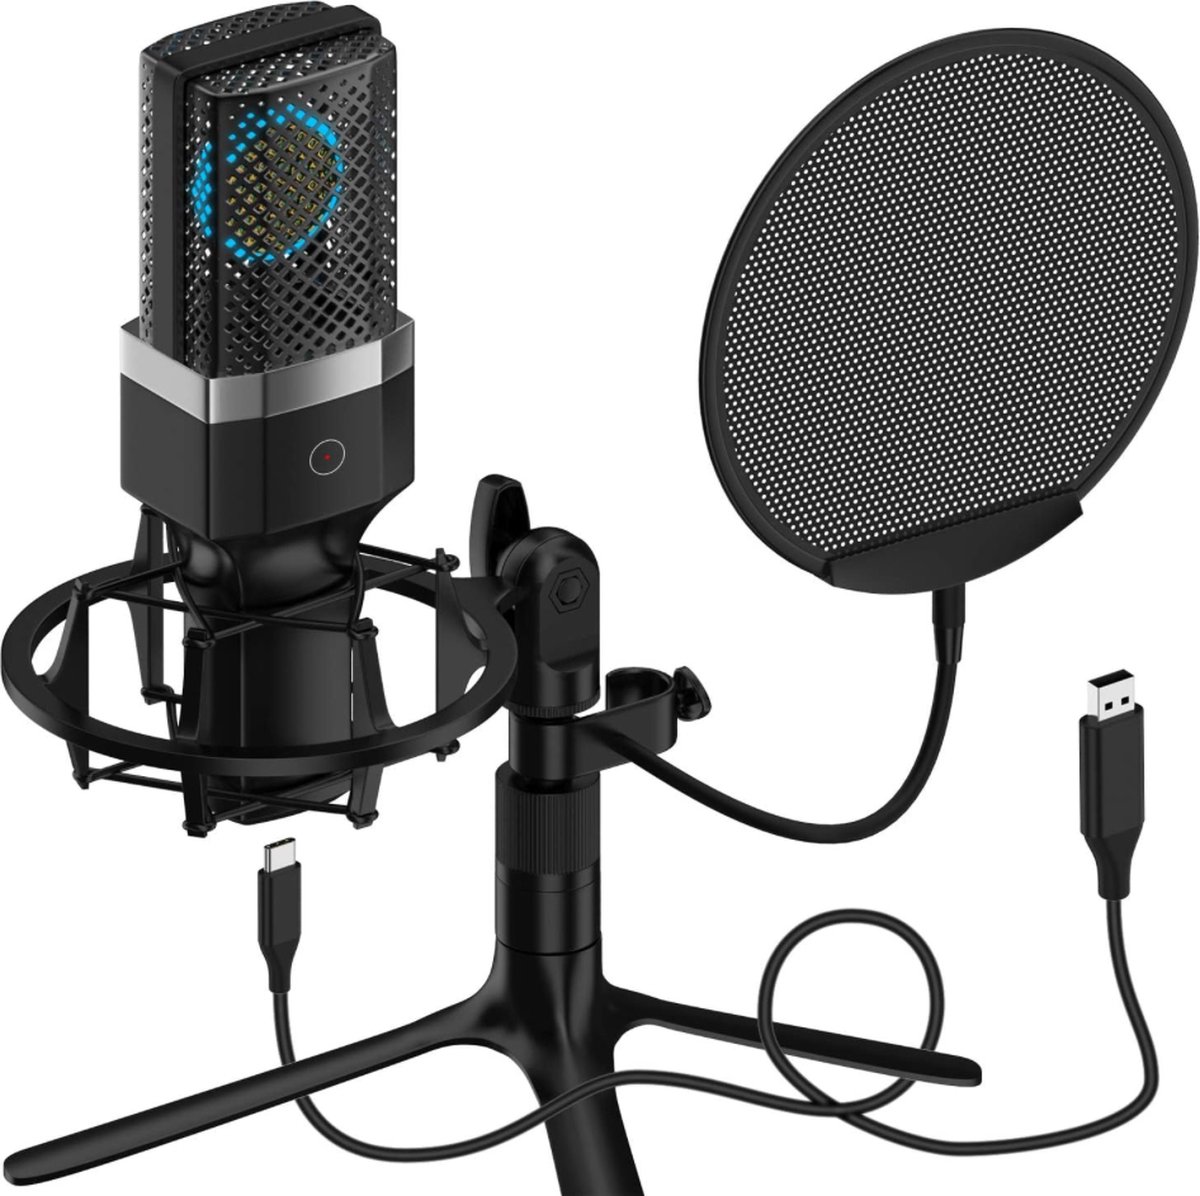 Yanmai - USB PC Microfoon - Professionele Condensator Microfoon - voor PC/Laptop/Gaming - Plug & Play met Touch Mute - Dubbellaags Pop Filter en Statief voor Studio Opname Uitzenden en Gaming - Gaming Microfoon - Vlog Microfoon - Podcast Microfoon - Yanmai